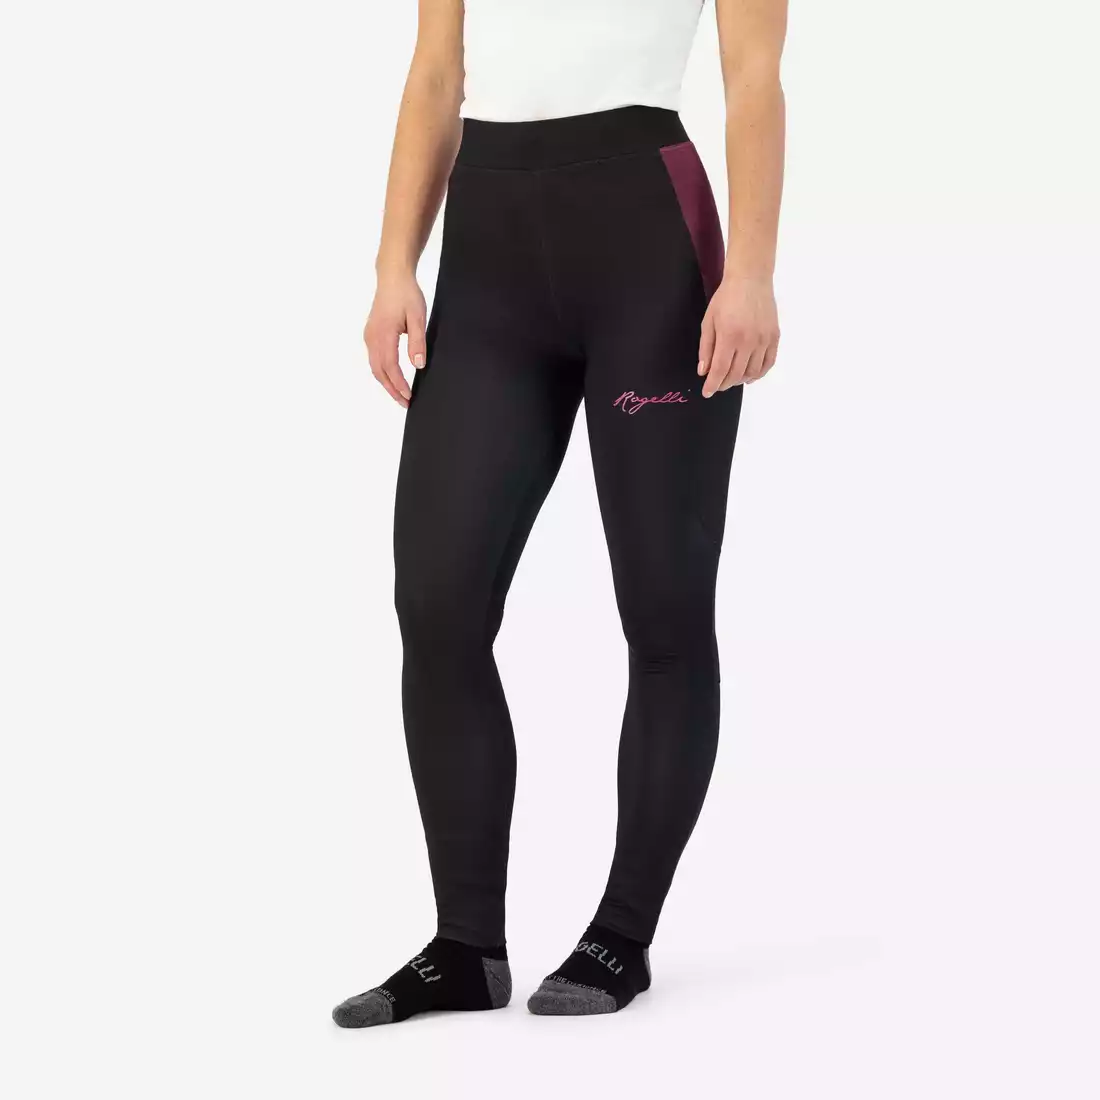 ROGELLI ENJOY II dámske zimné joggingové nohavice, čierne